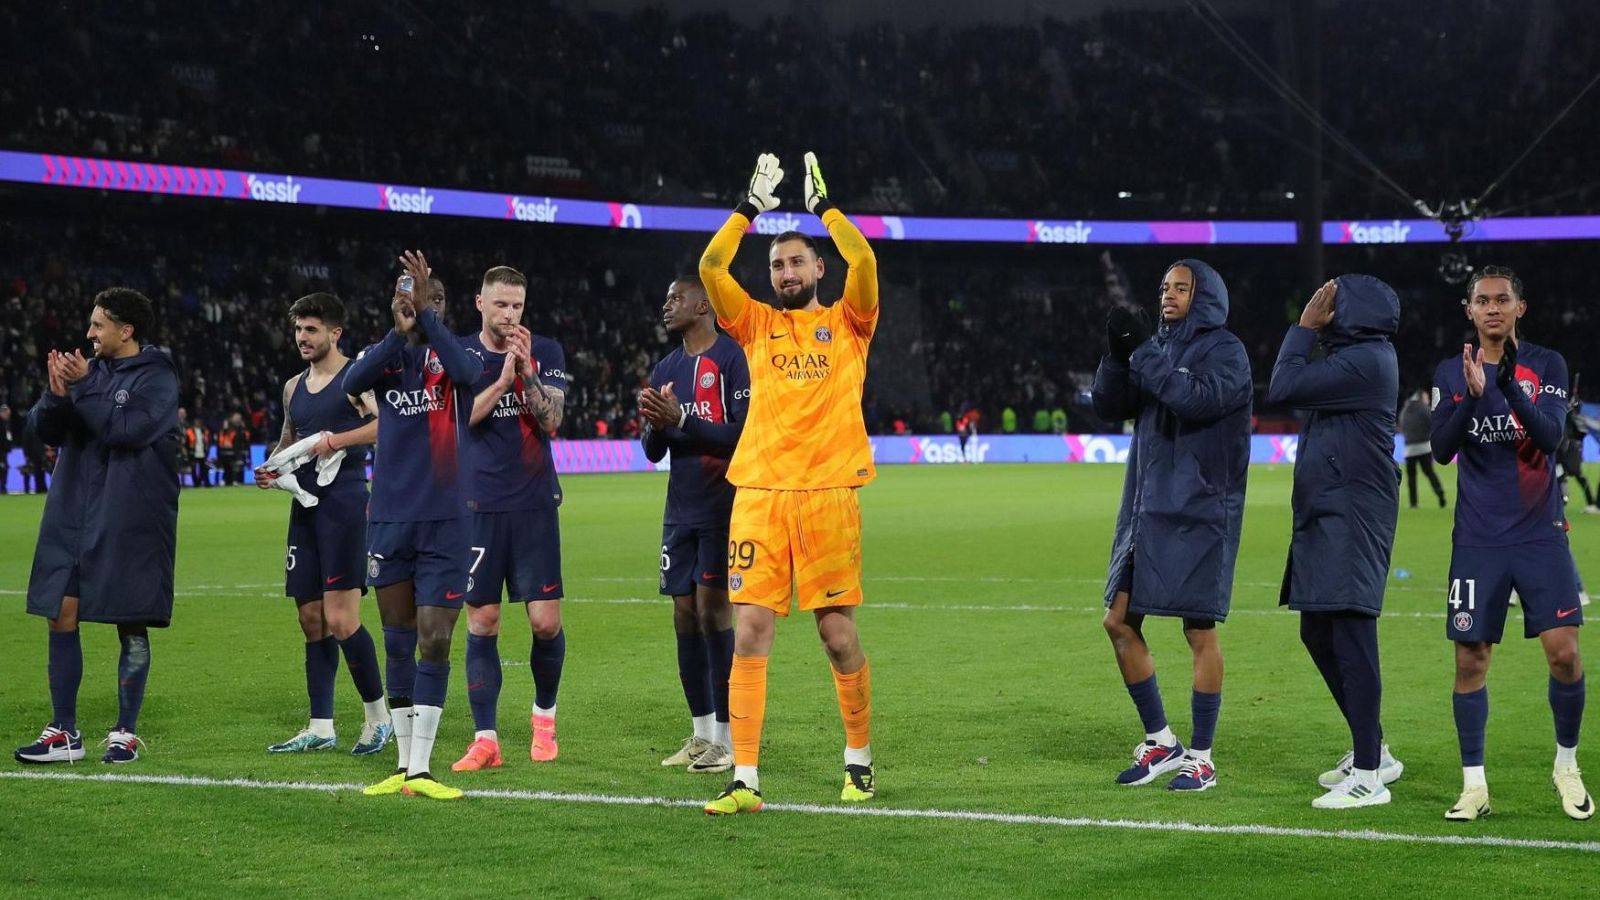 El PSG se proclama campeón de la liga francesa tras la derrota del Mónaco en Lyon.